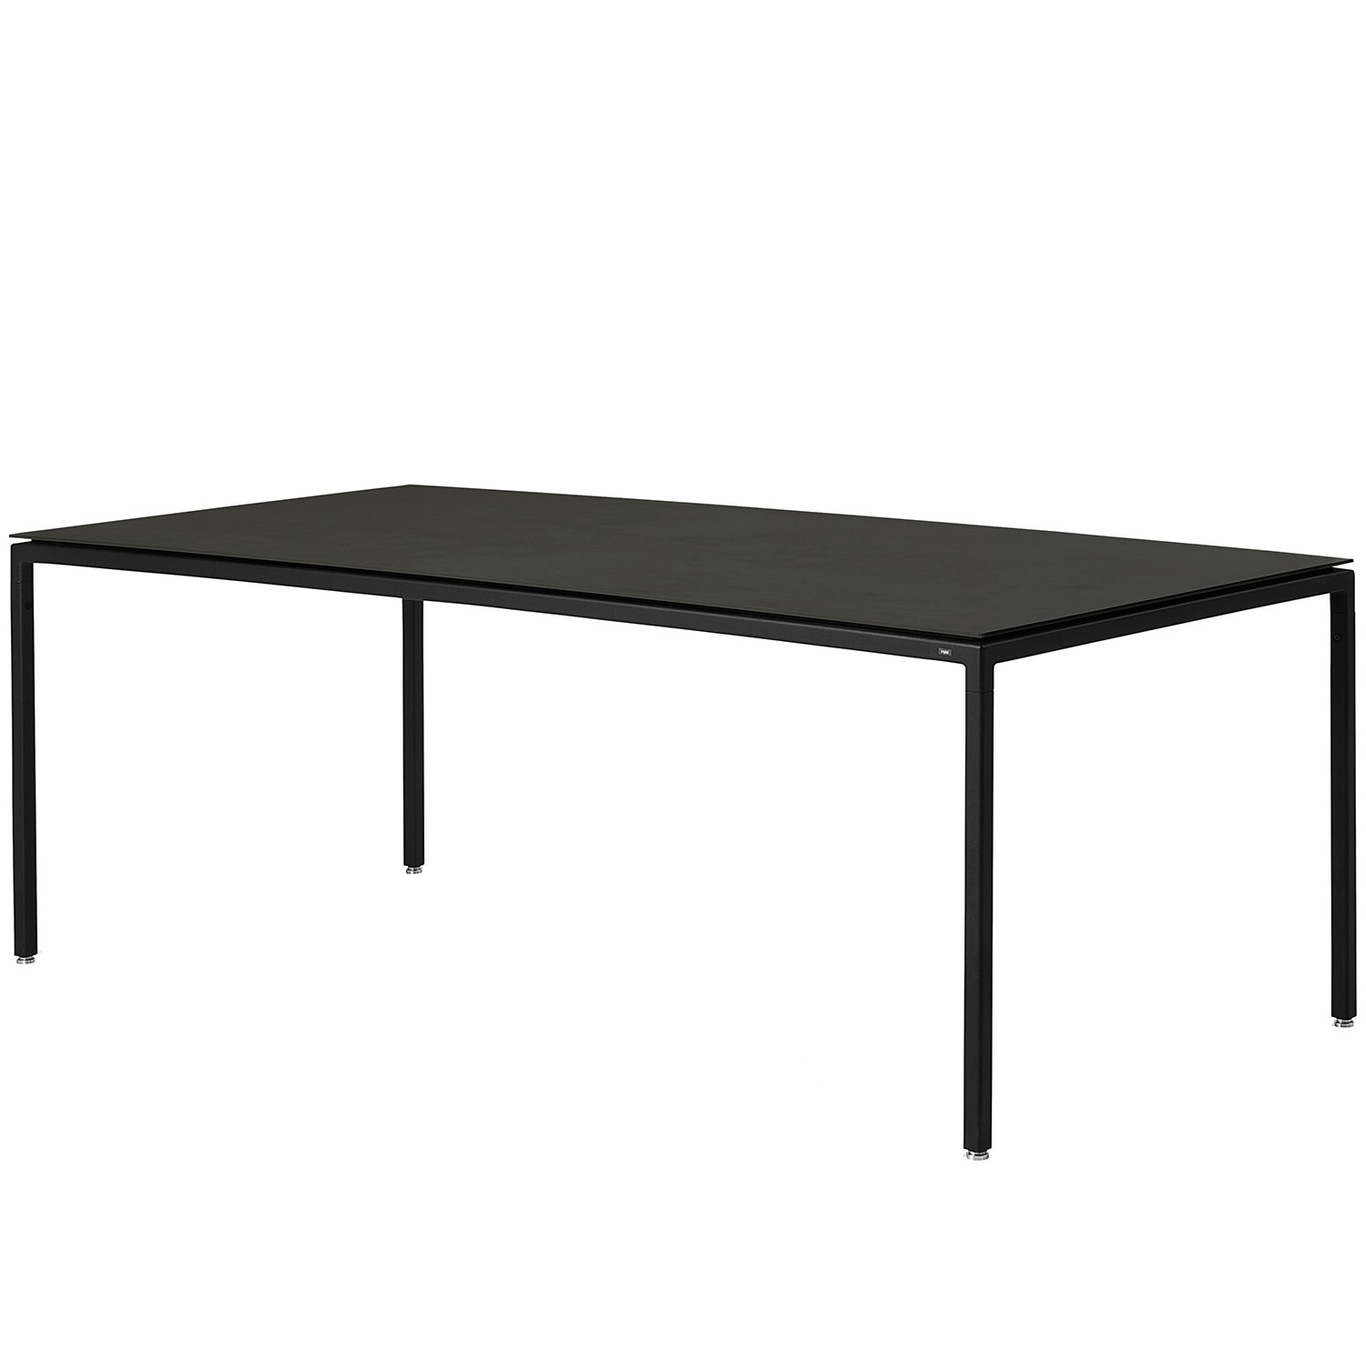 Vipp971 Dining Table Medium 95x200 cm, Black